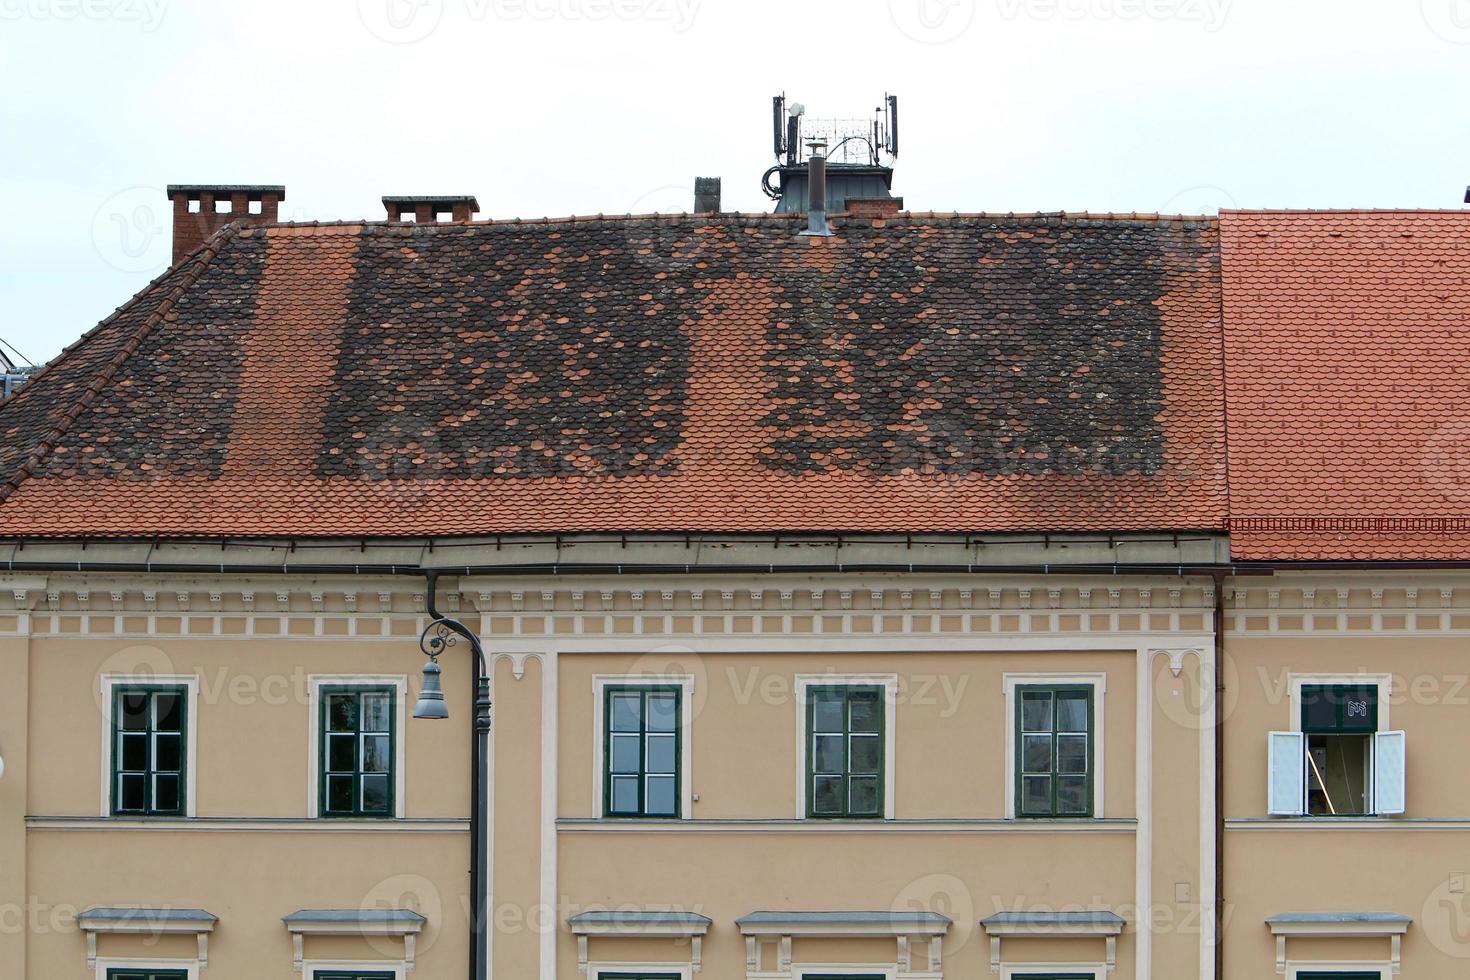 pannendaken van de stad ljubljana, de hoofdstad van slovenië. foto